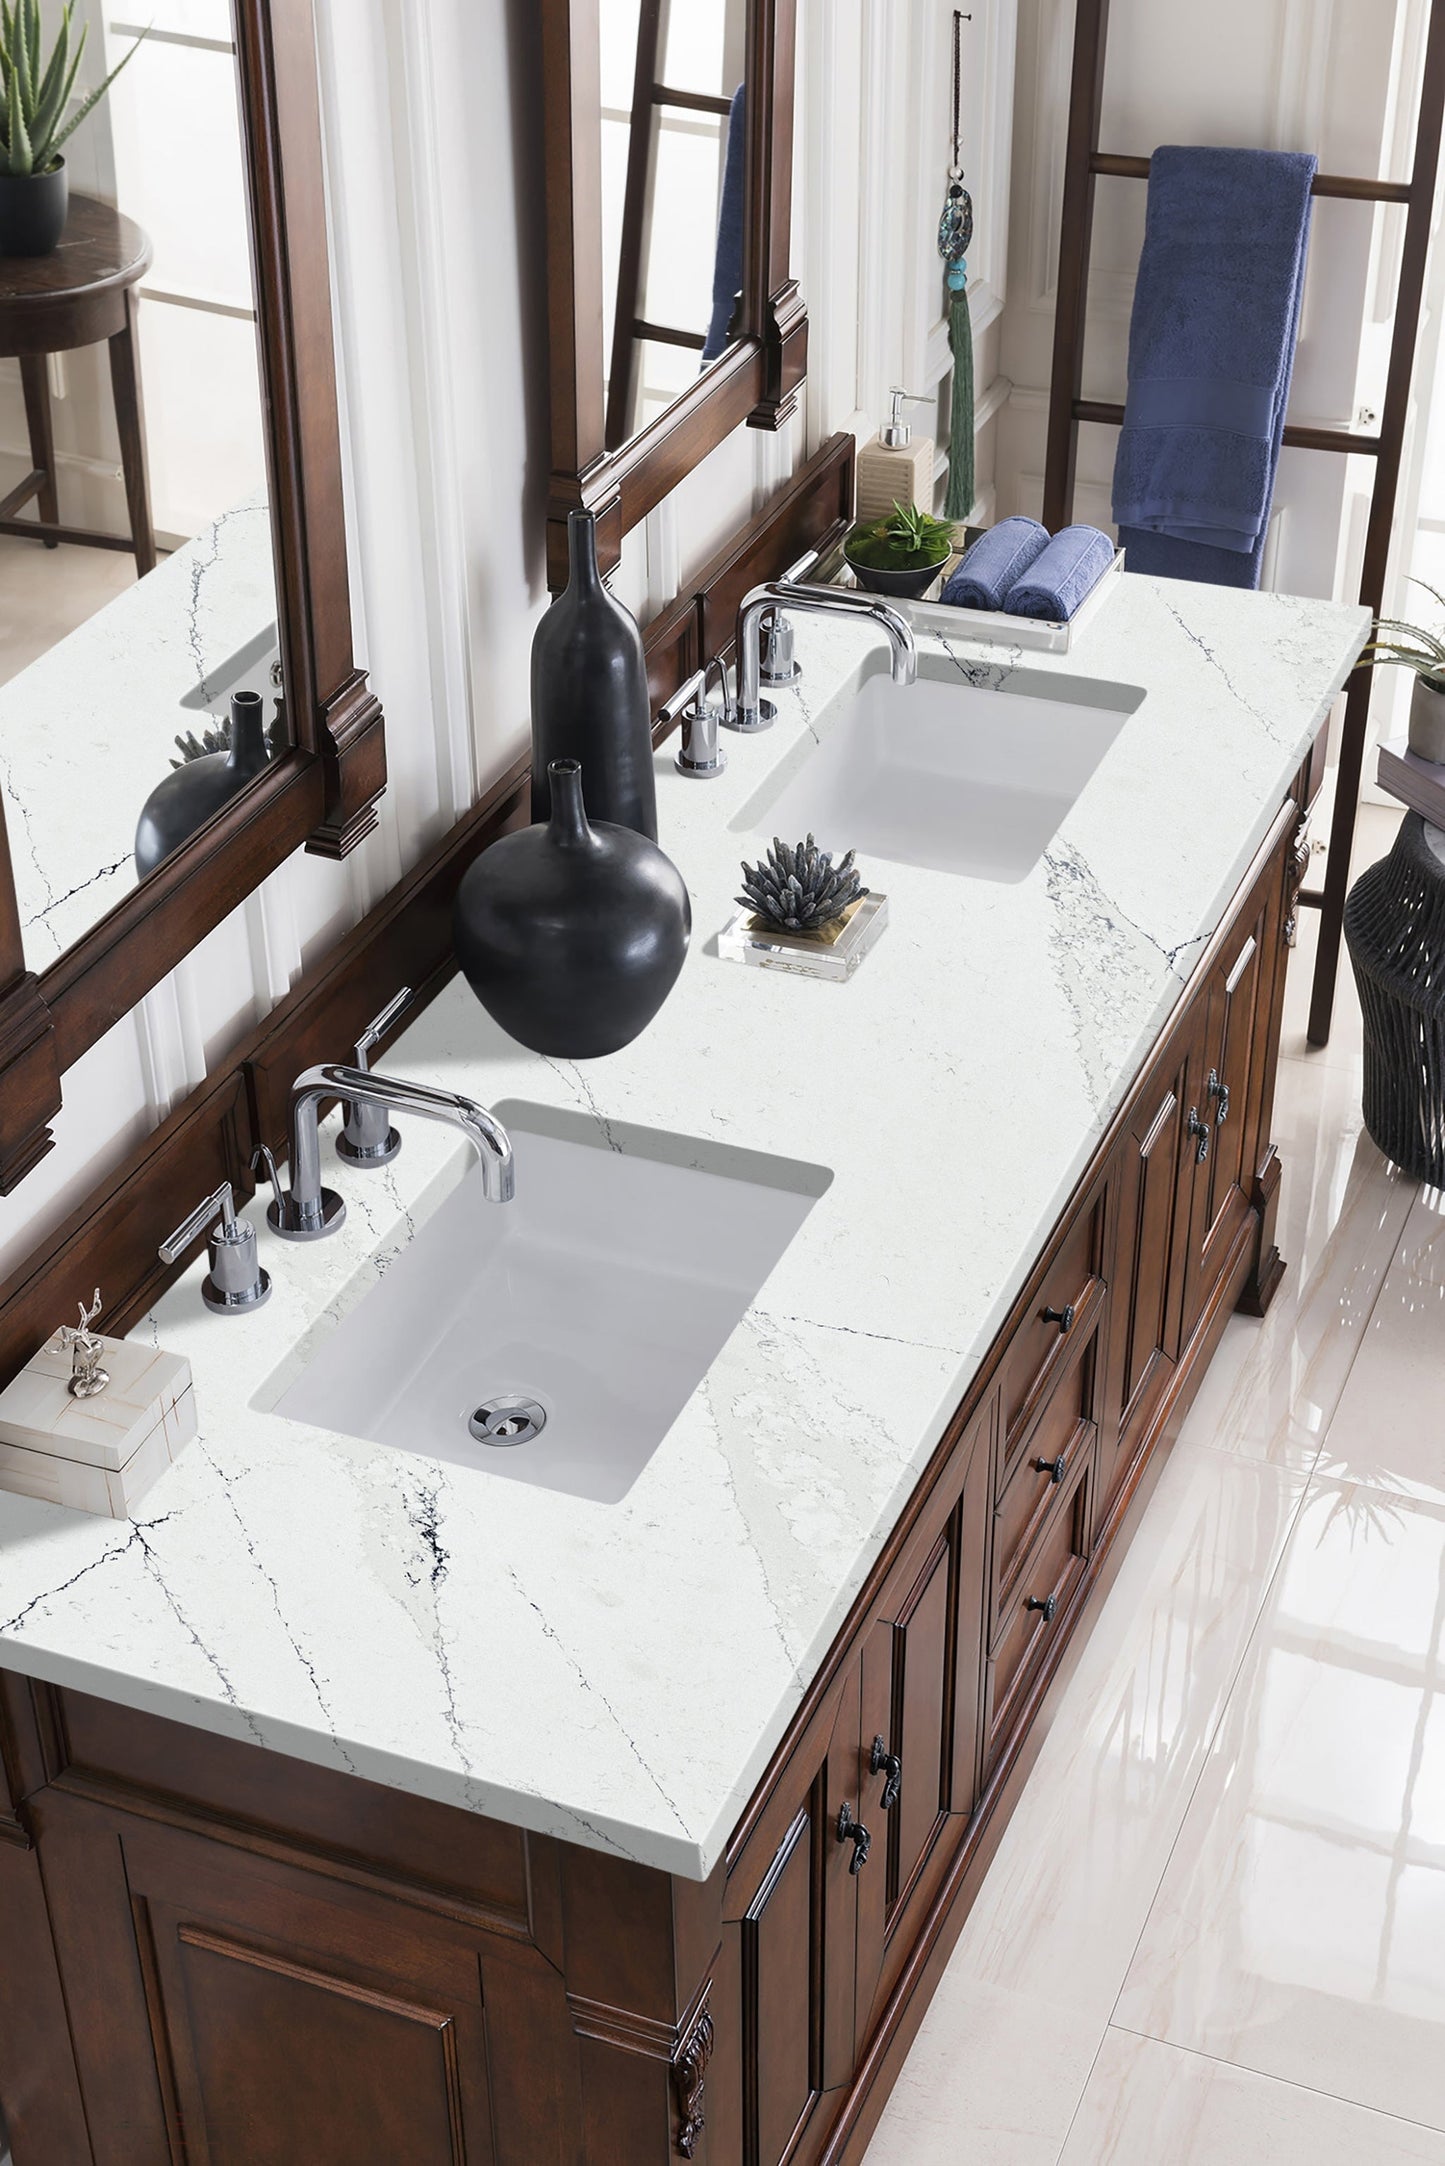 
                  
                    Brookfield 60" Double Bathroom Vanity in Warm Cherry Single Bathroom Vanity James Martin Vanities Ethereal Noctis Quartz 
                  
                